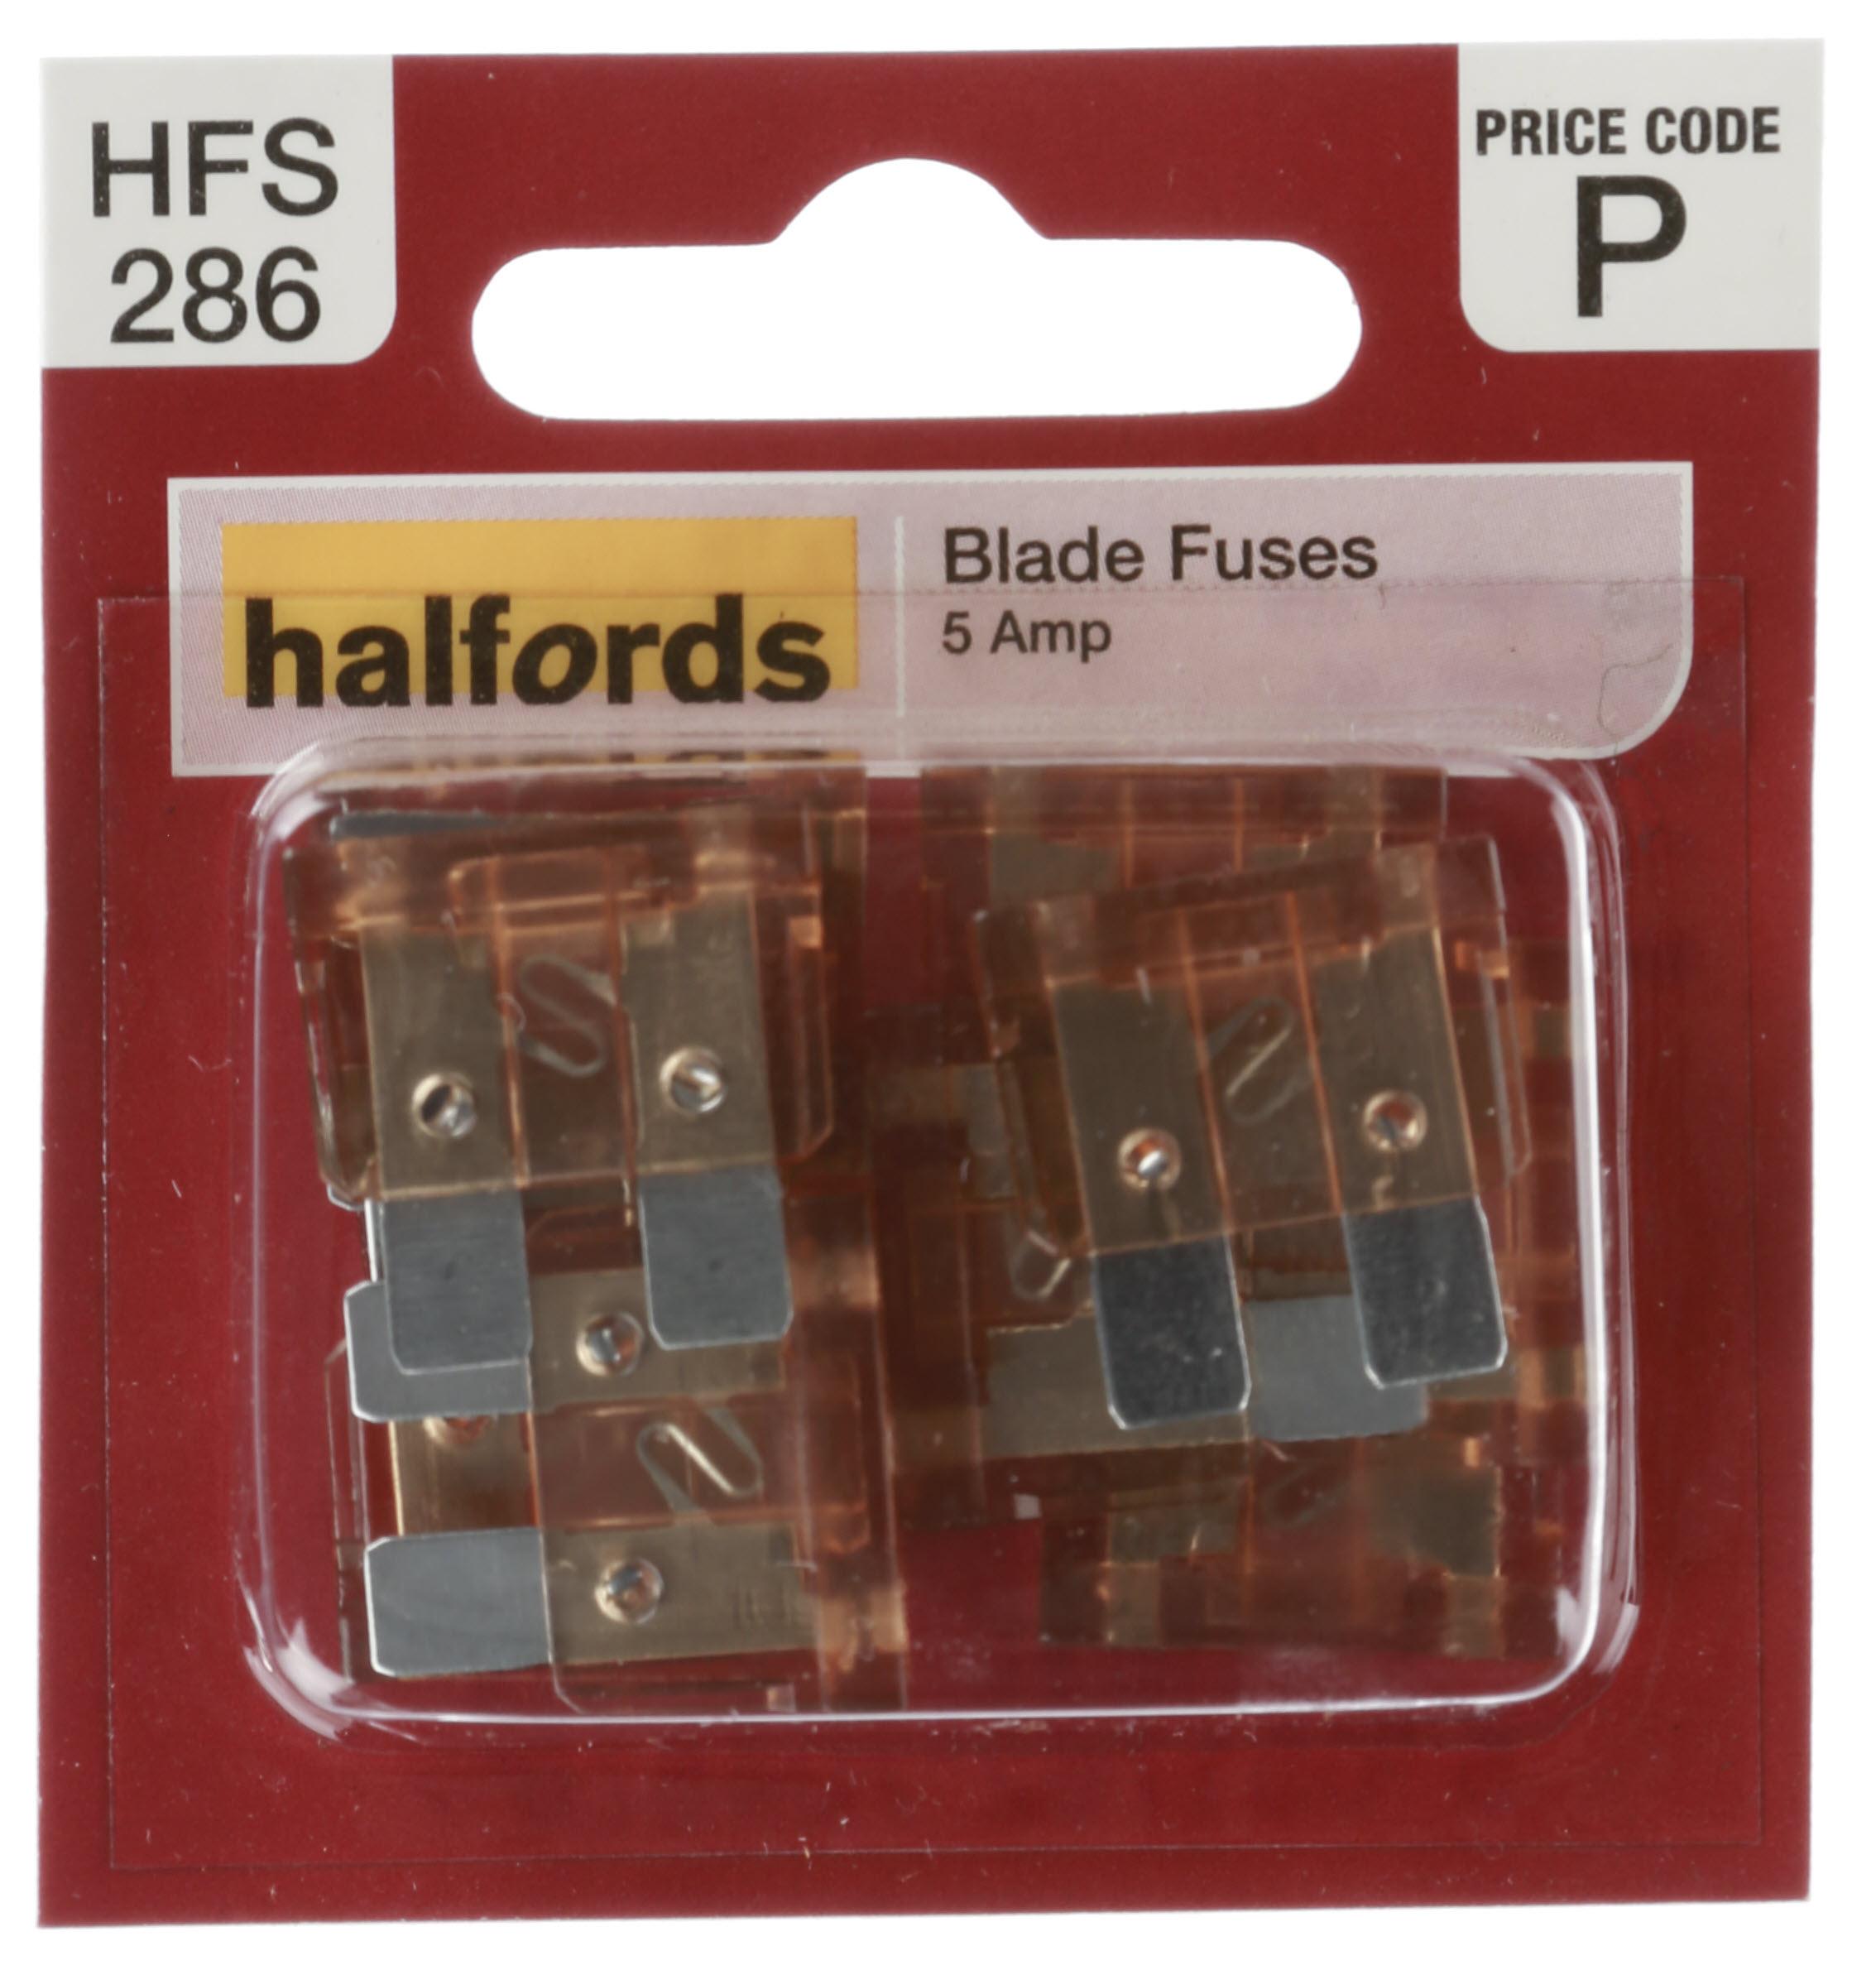 Halfords Blade Fuses 5 Amp (Hfs286)